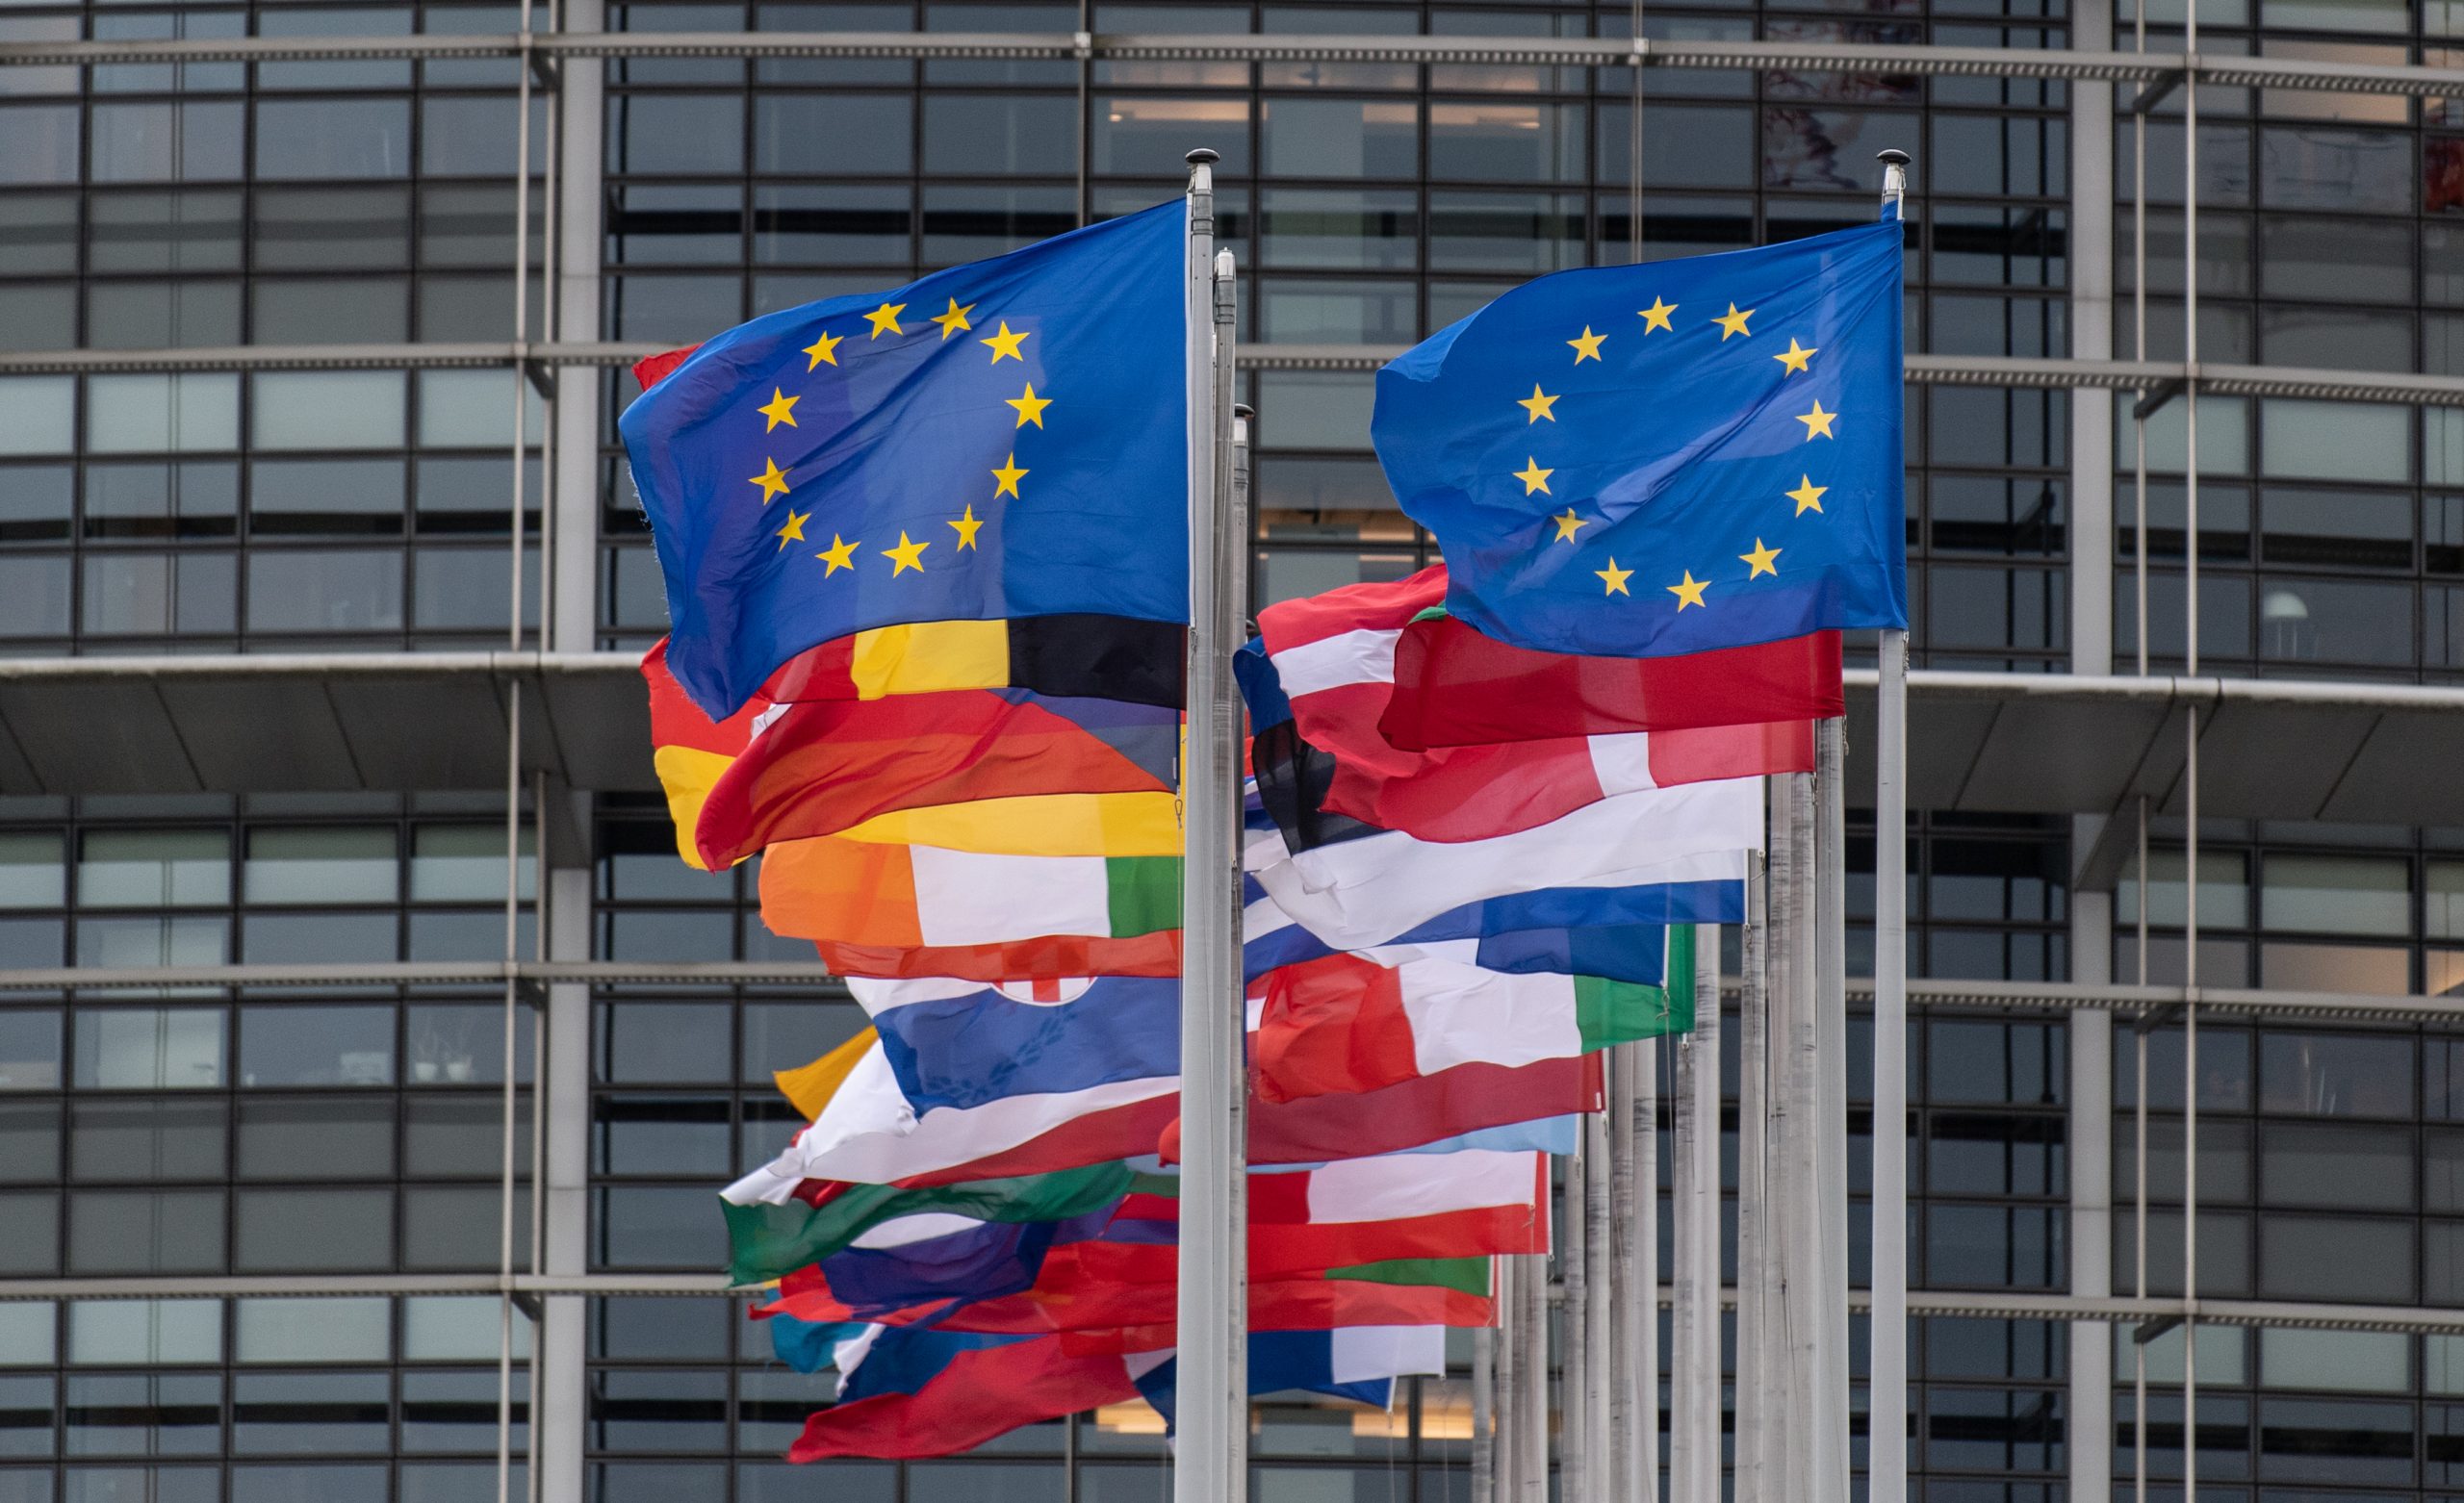 ευρωπαϊκό κοινοβούλιο σημαίες Ευρώπης ευρωπαϊκές σημαίες της Ευρώπης